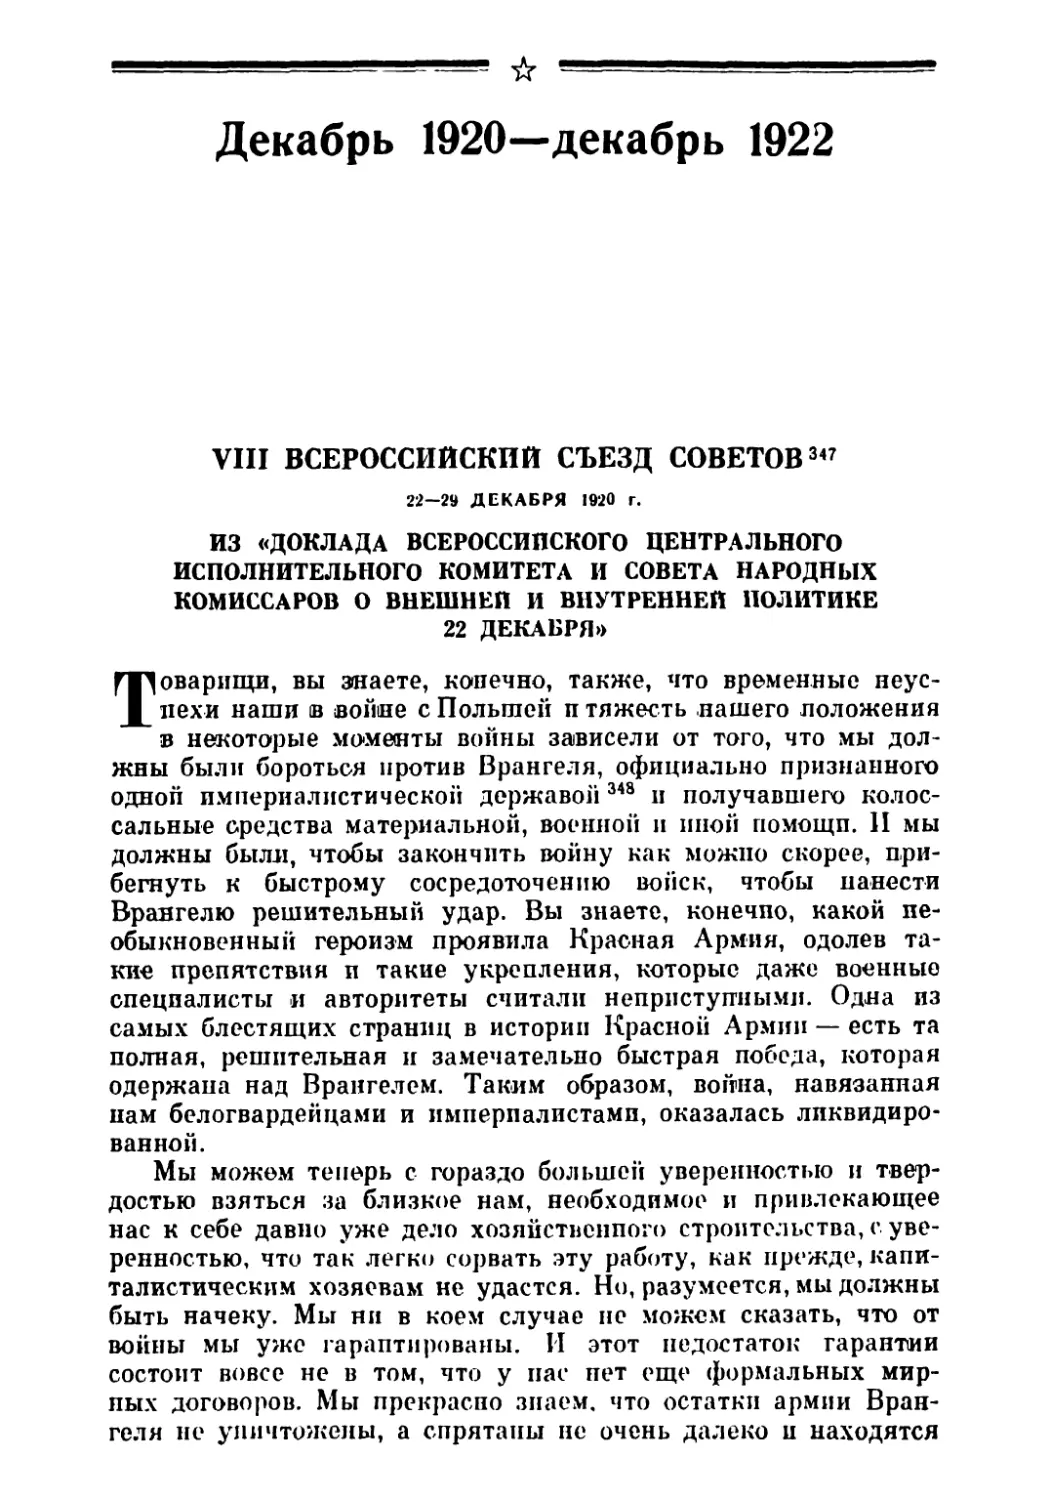 Декабрь 1920 — декабрь 1922
VIII Всероссийский съезд Советов 22—29 декабря 1920 г.